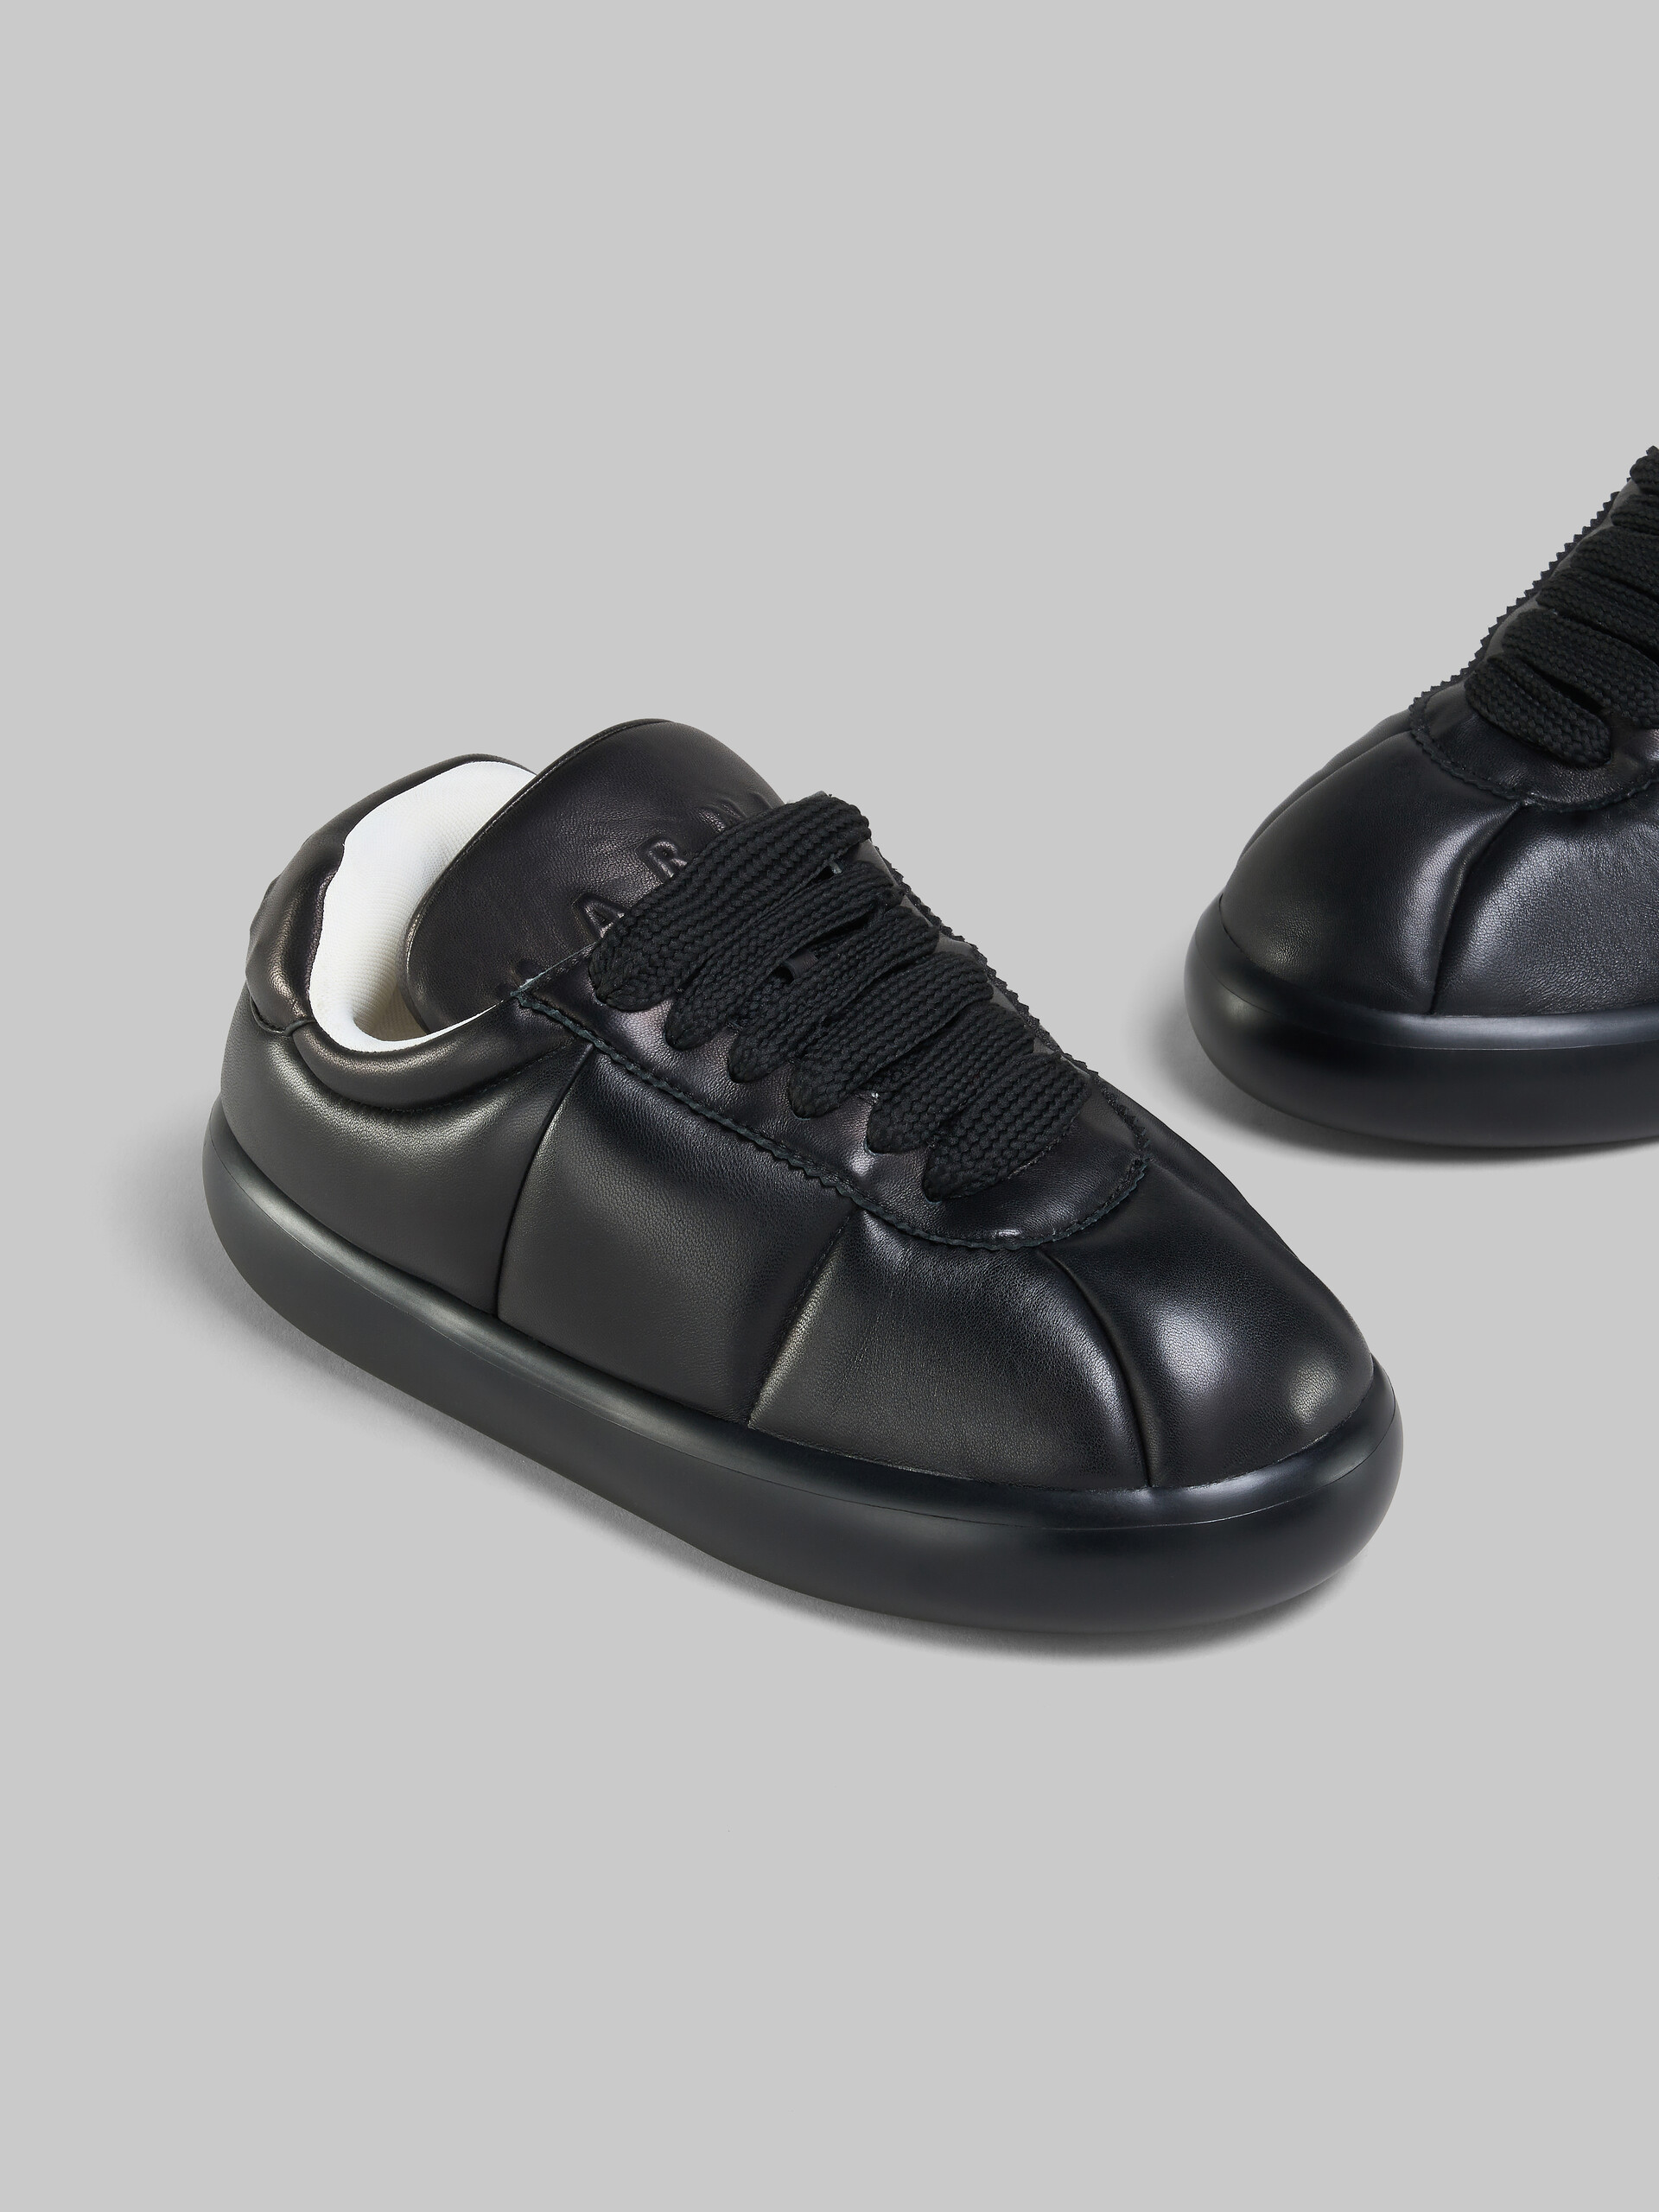 Sneakers BigFoot 2.0 en cuir noir - Sneakers - Image 5